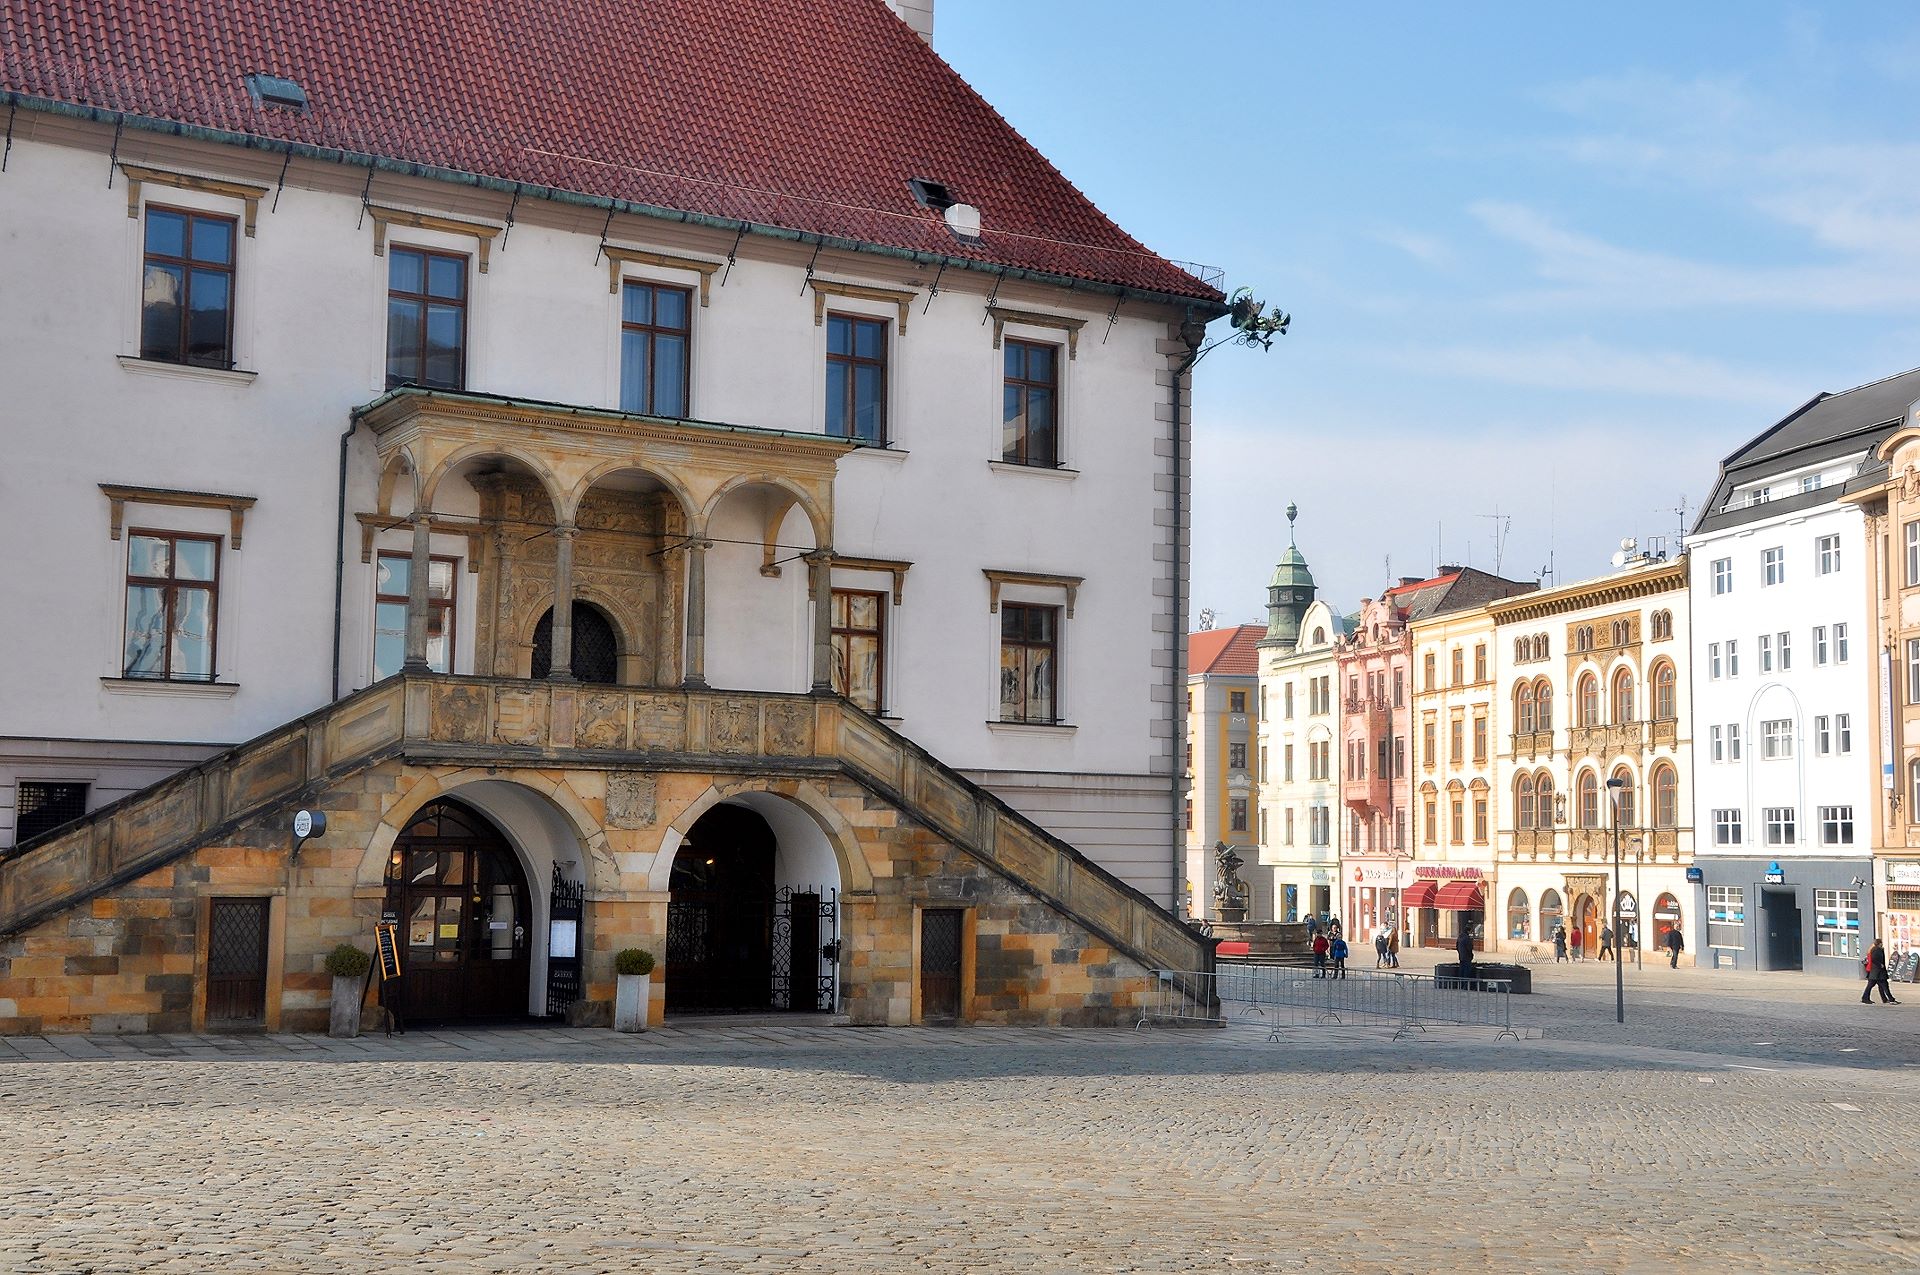 Treppe und Portal (16. Jhdt.) am Rathaus